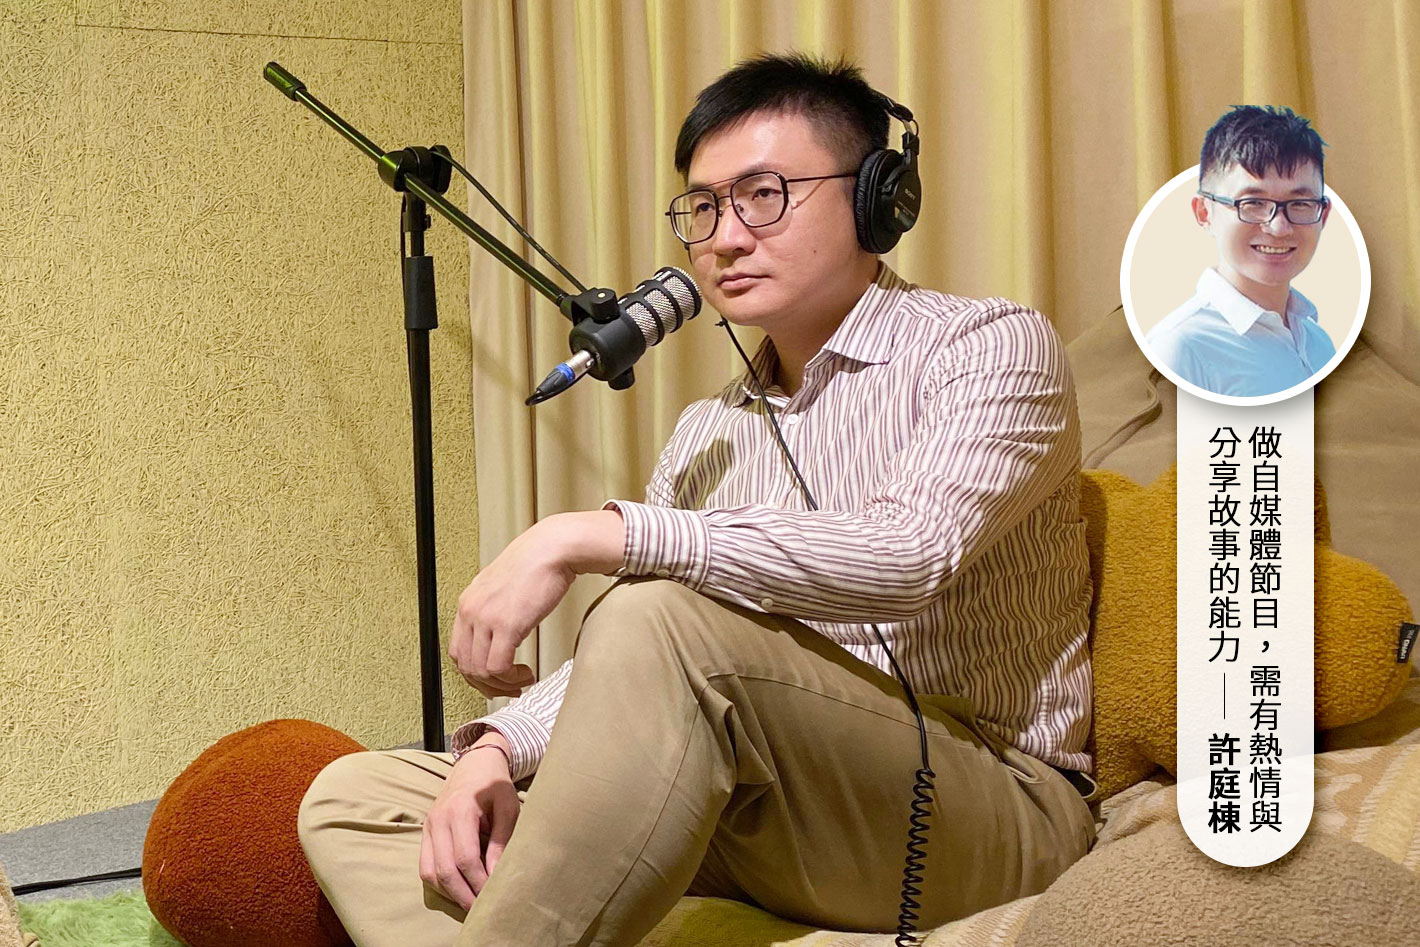 一個手拿麥克風的男子坐在麥克風前，旁邊有一個印有「旅行快門」字樣的海報。他正在錄製自己的Podcast節目，並透過旅遊故事吸引聽眾。